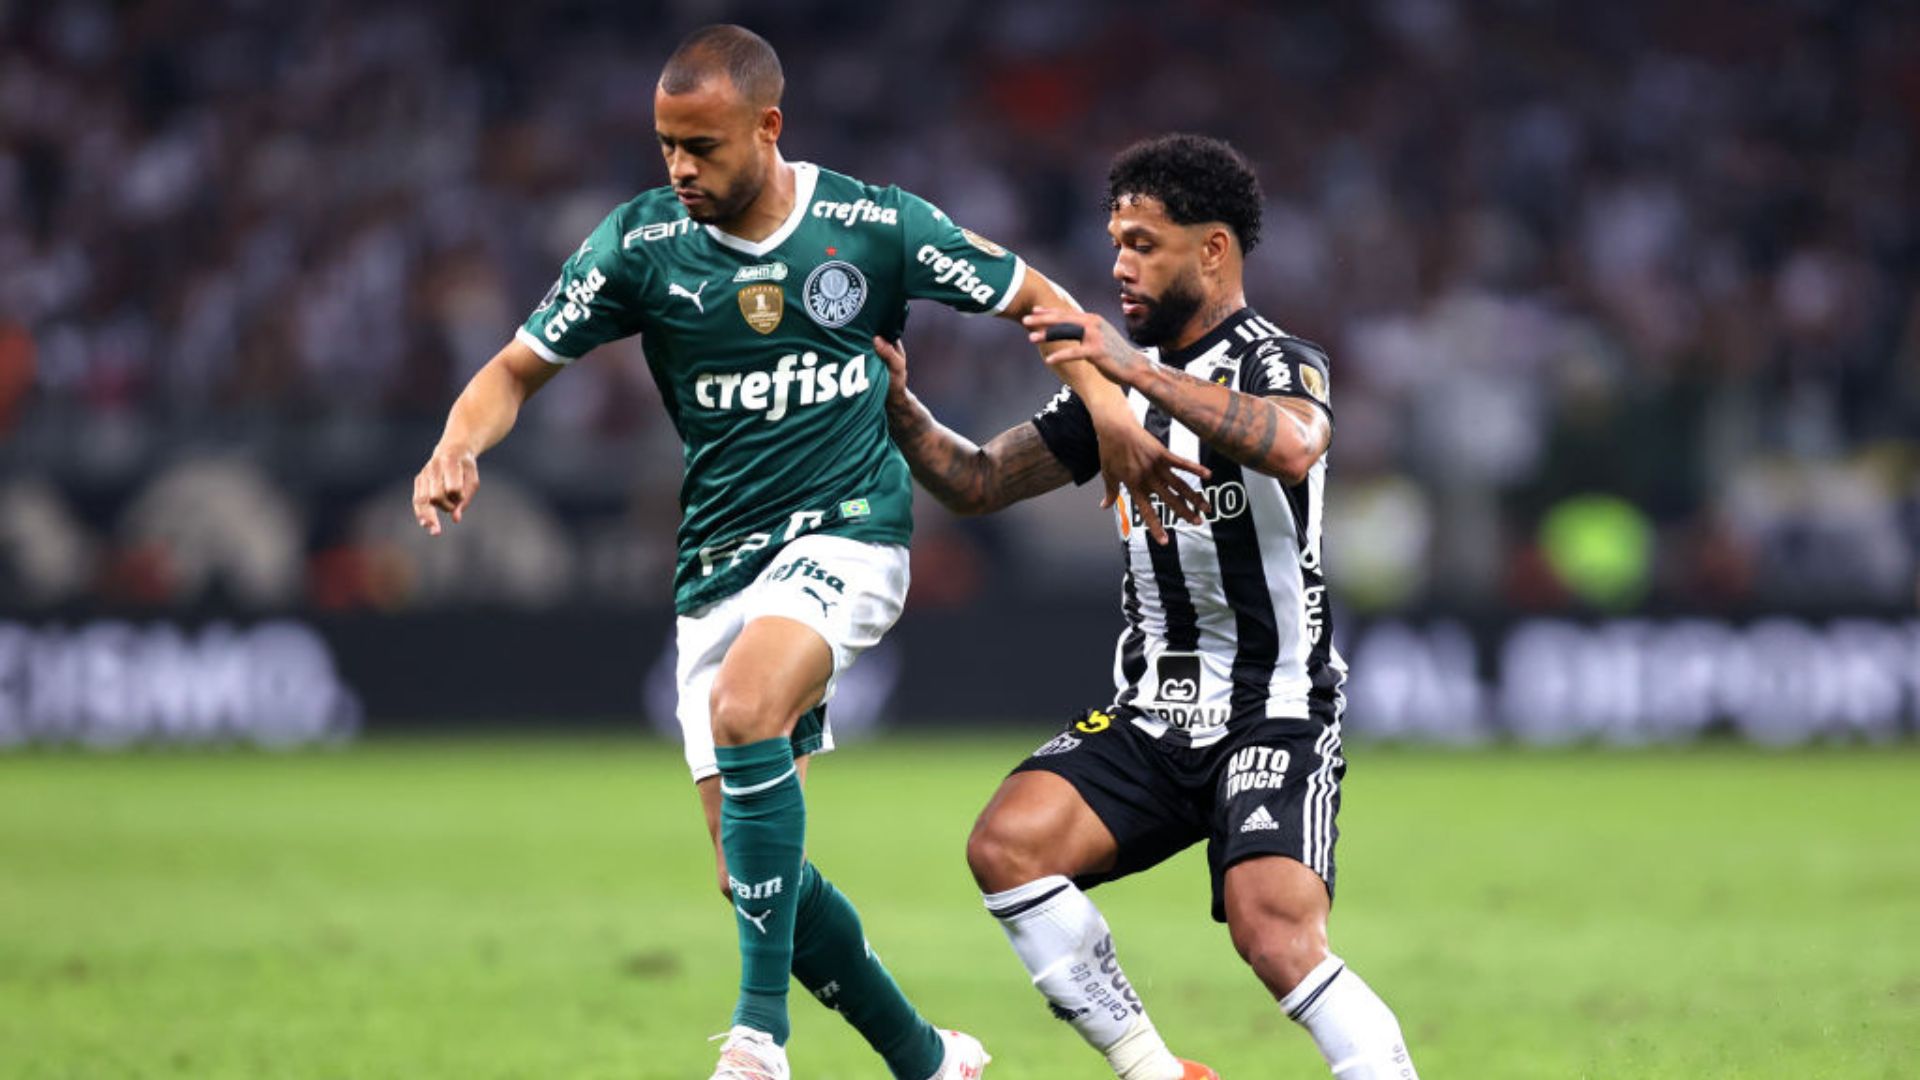 Palmeiras x Atlético-MG em campo pela Libertadores